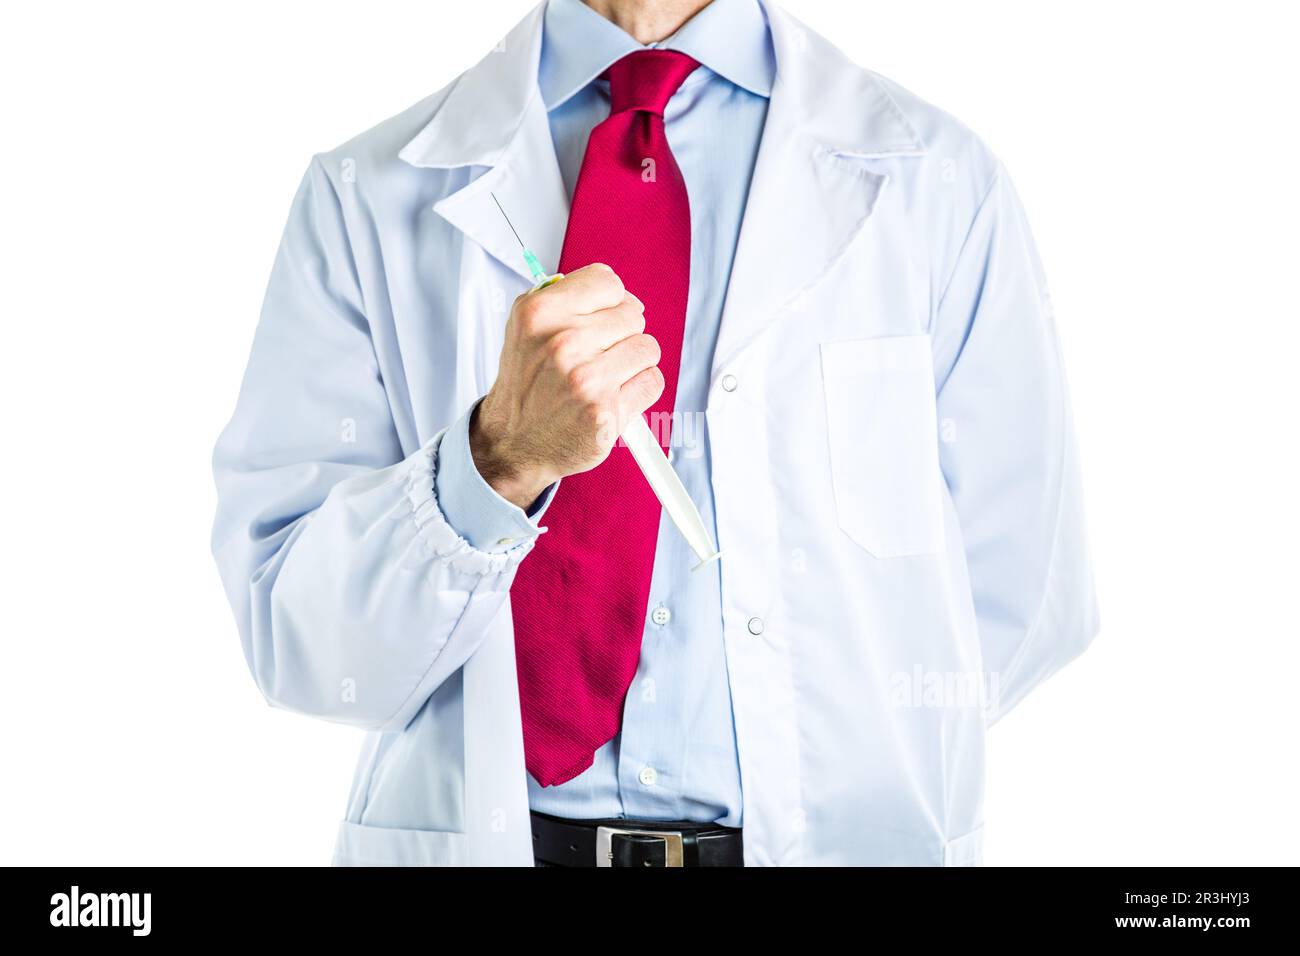 Arzt in weißem Mantel, der die Spritze hält Stockfoto